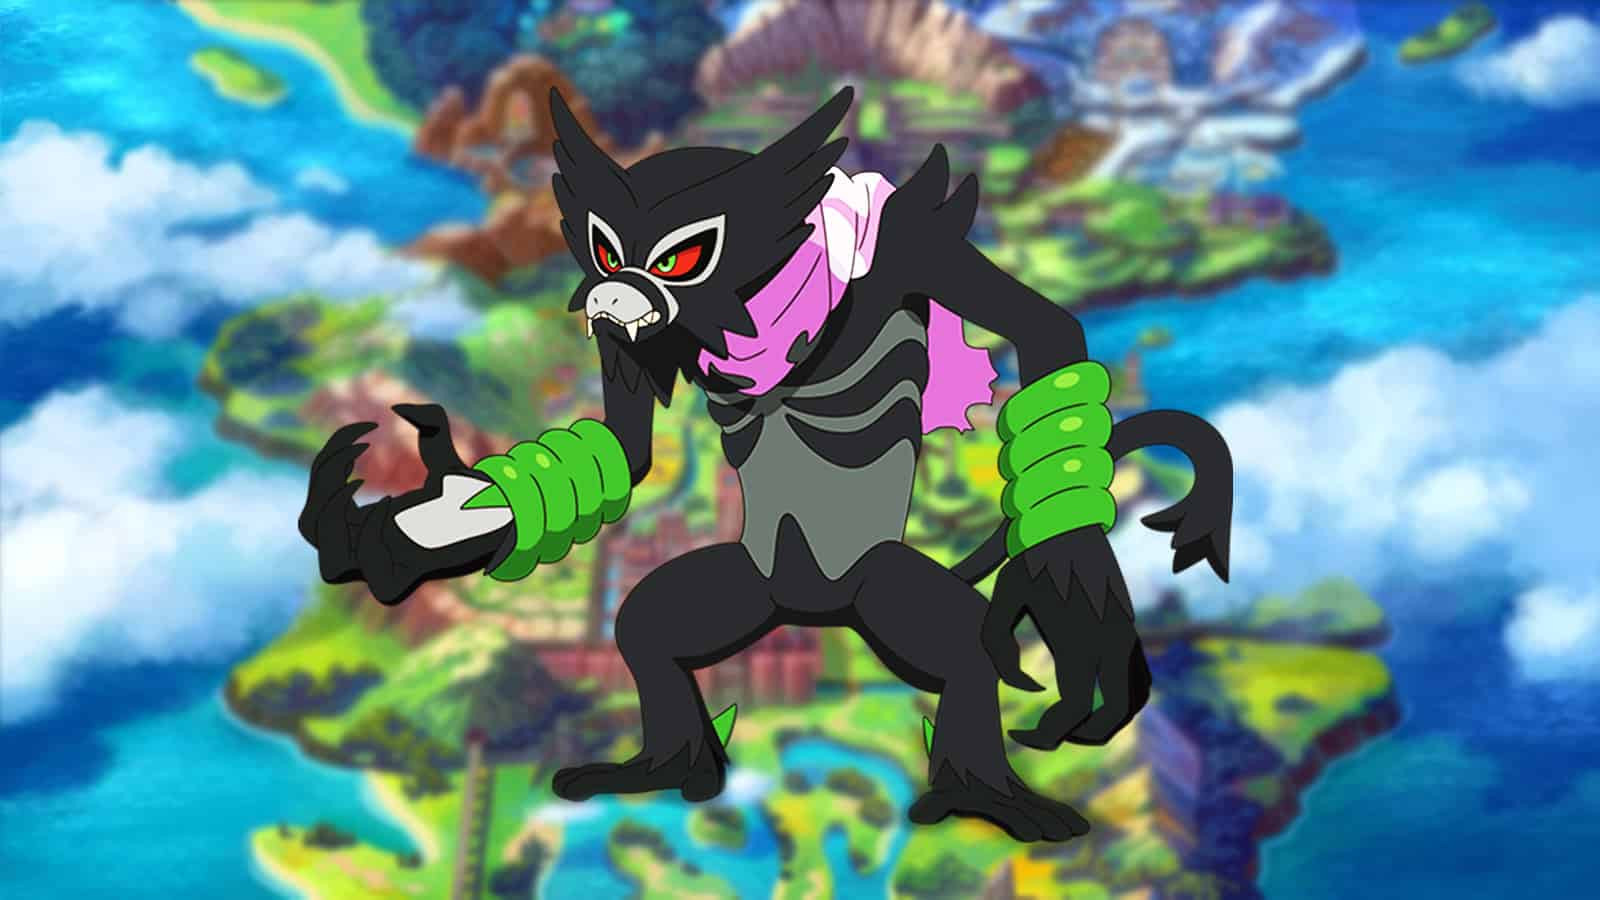 How to Get Zarude in Pokémon GO